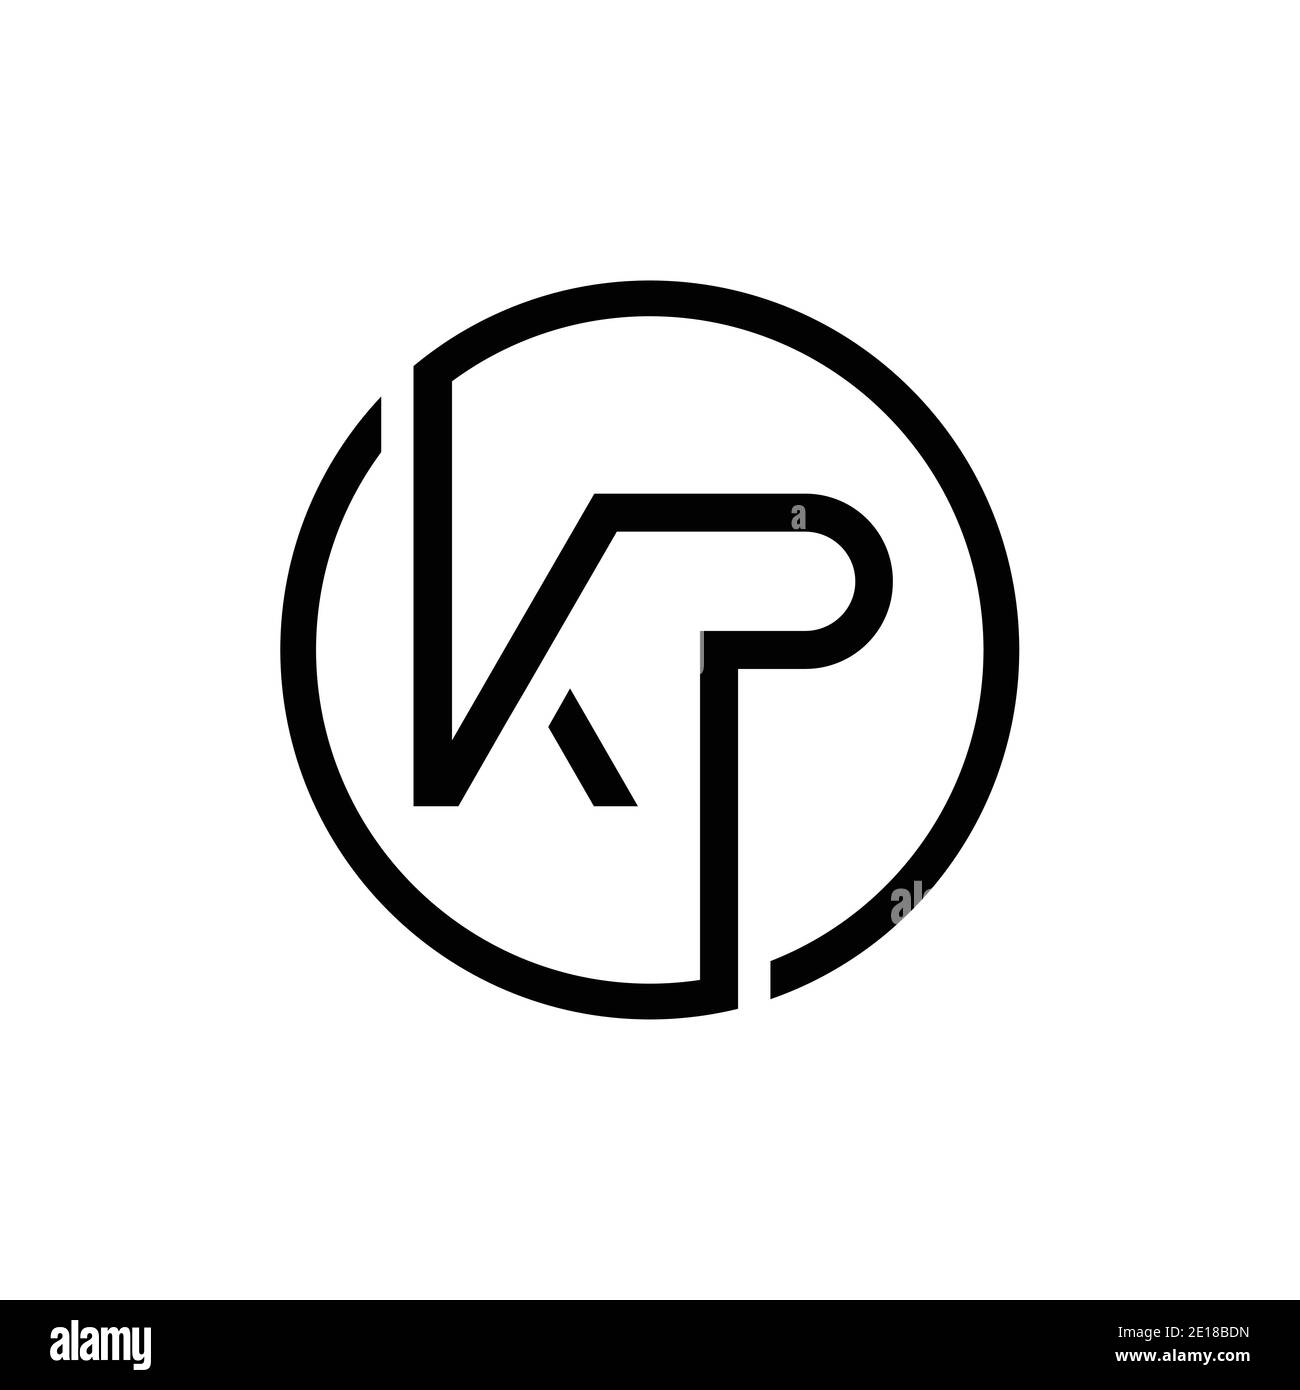 Modello vettoriale di progettazione del logo KP con lettera collegata. Creative Circle KP minimal, disegno piatto del logo illustrazione vettoriale Illustrazione Vettoriale